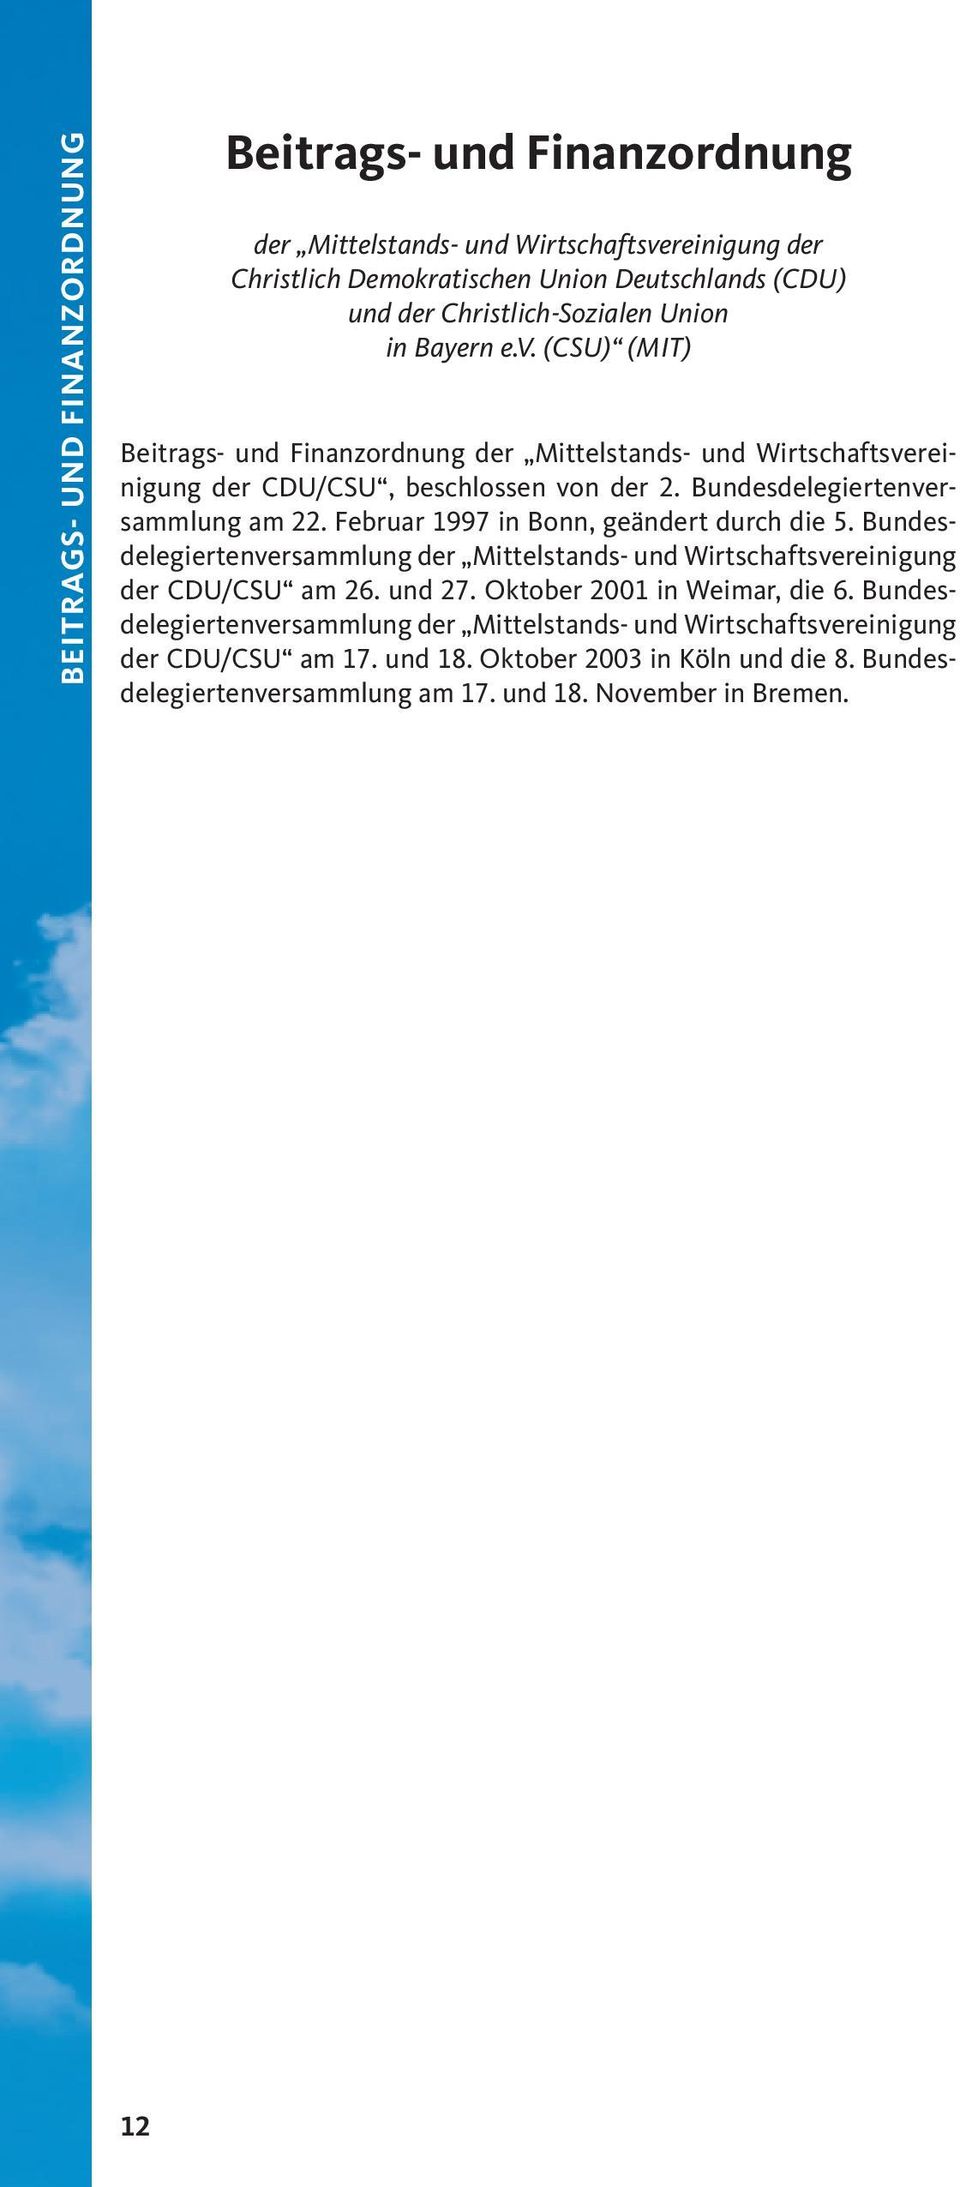 Februar 1997 in Bonn, geändert durch die 5. Bundesdelegiertenversammlung der Mittelstands- und Wirtschaftsvereinigung der CDU/CSU am 26. und 27. Oktober 2001 in Weimar, die 6.